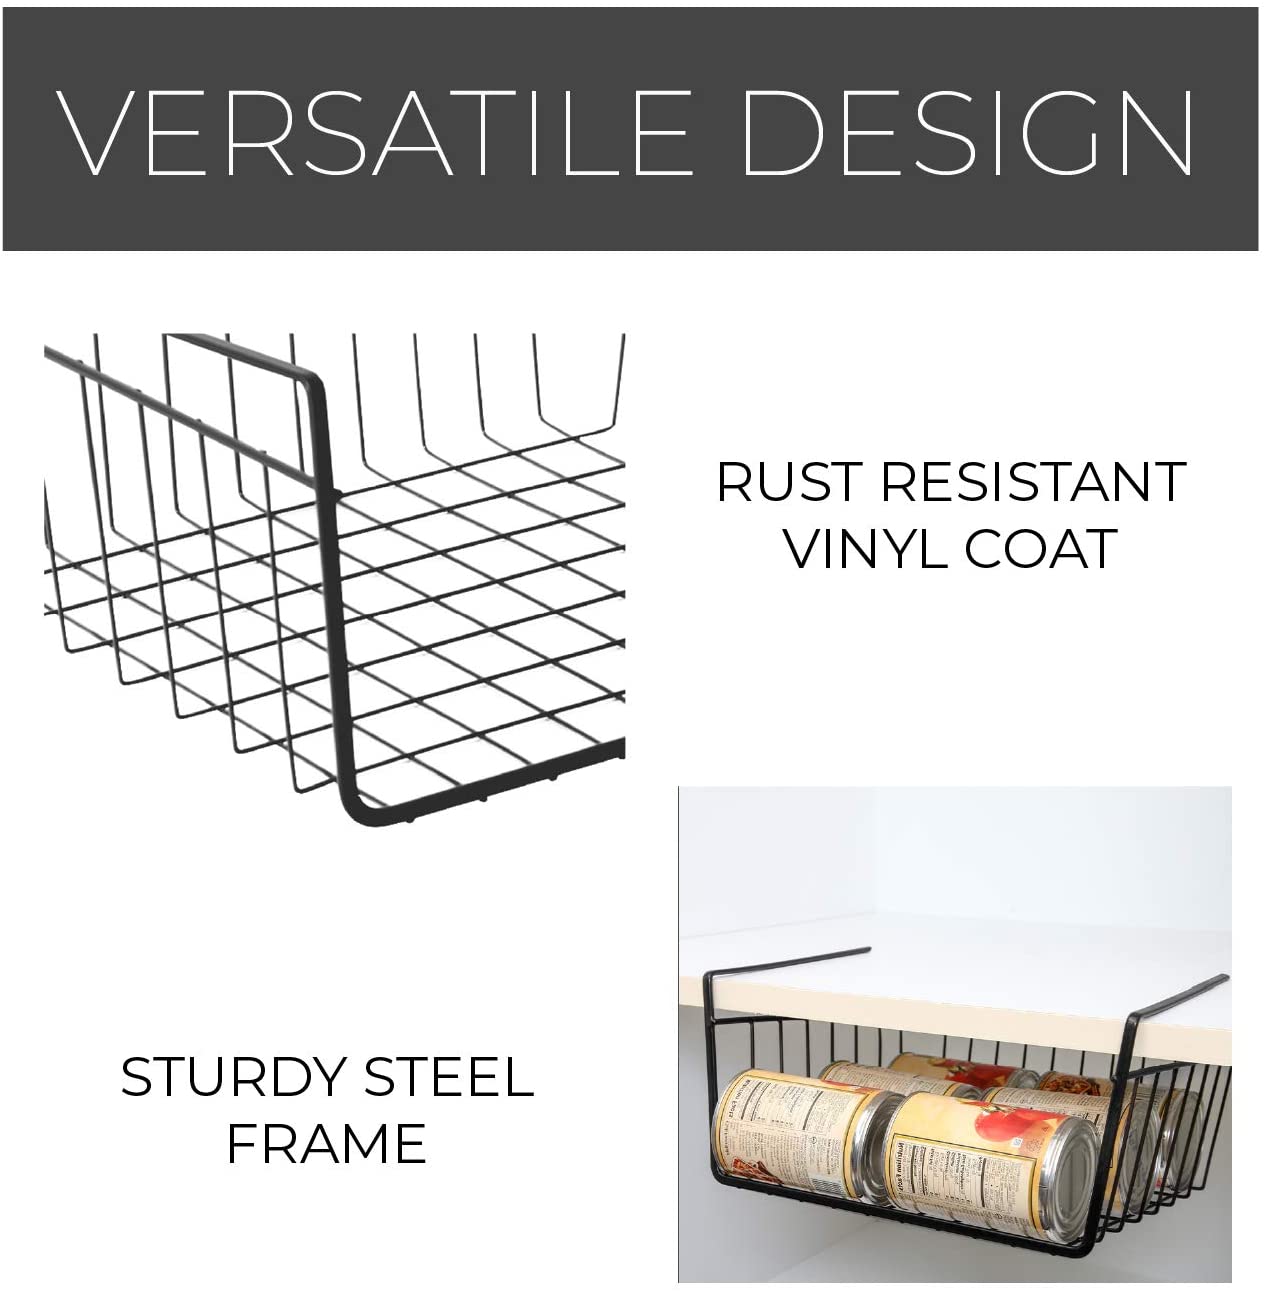 Medium Steel Undershelf Storage Basket - Smart Design® 12